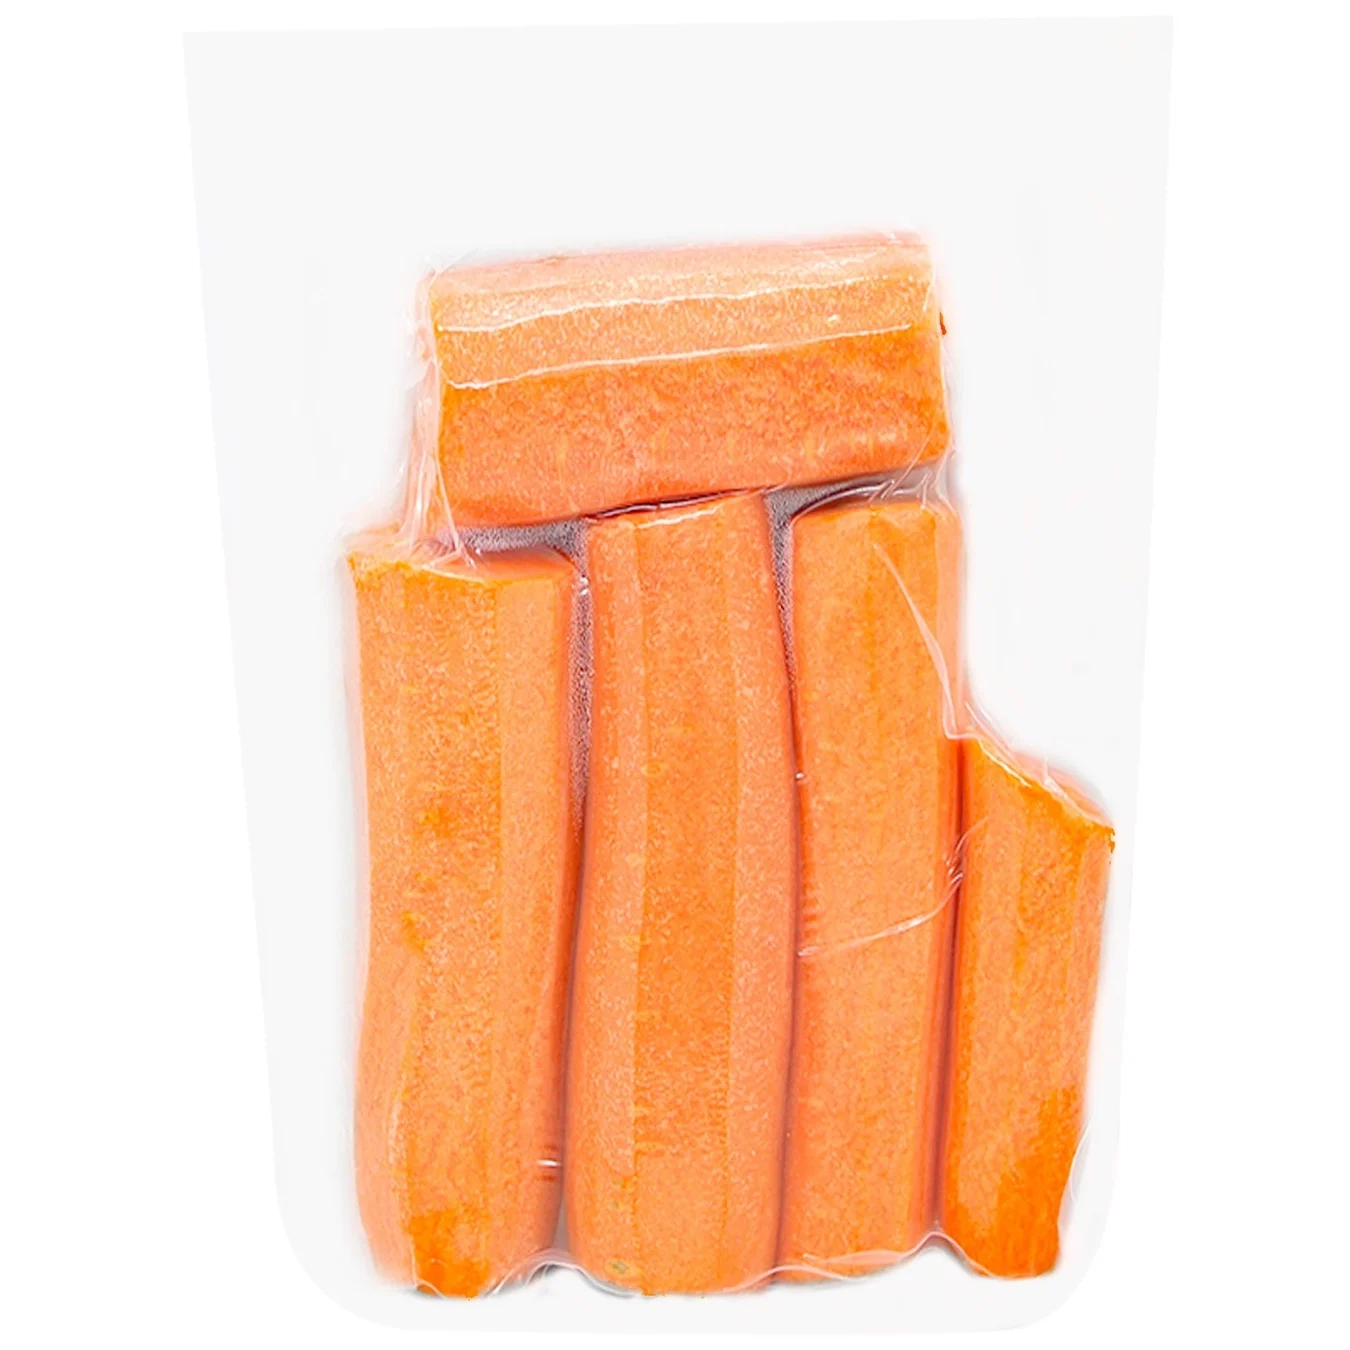 Морковь очищенная мытая целая 500г